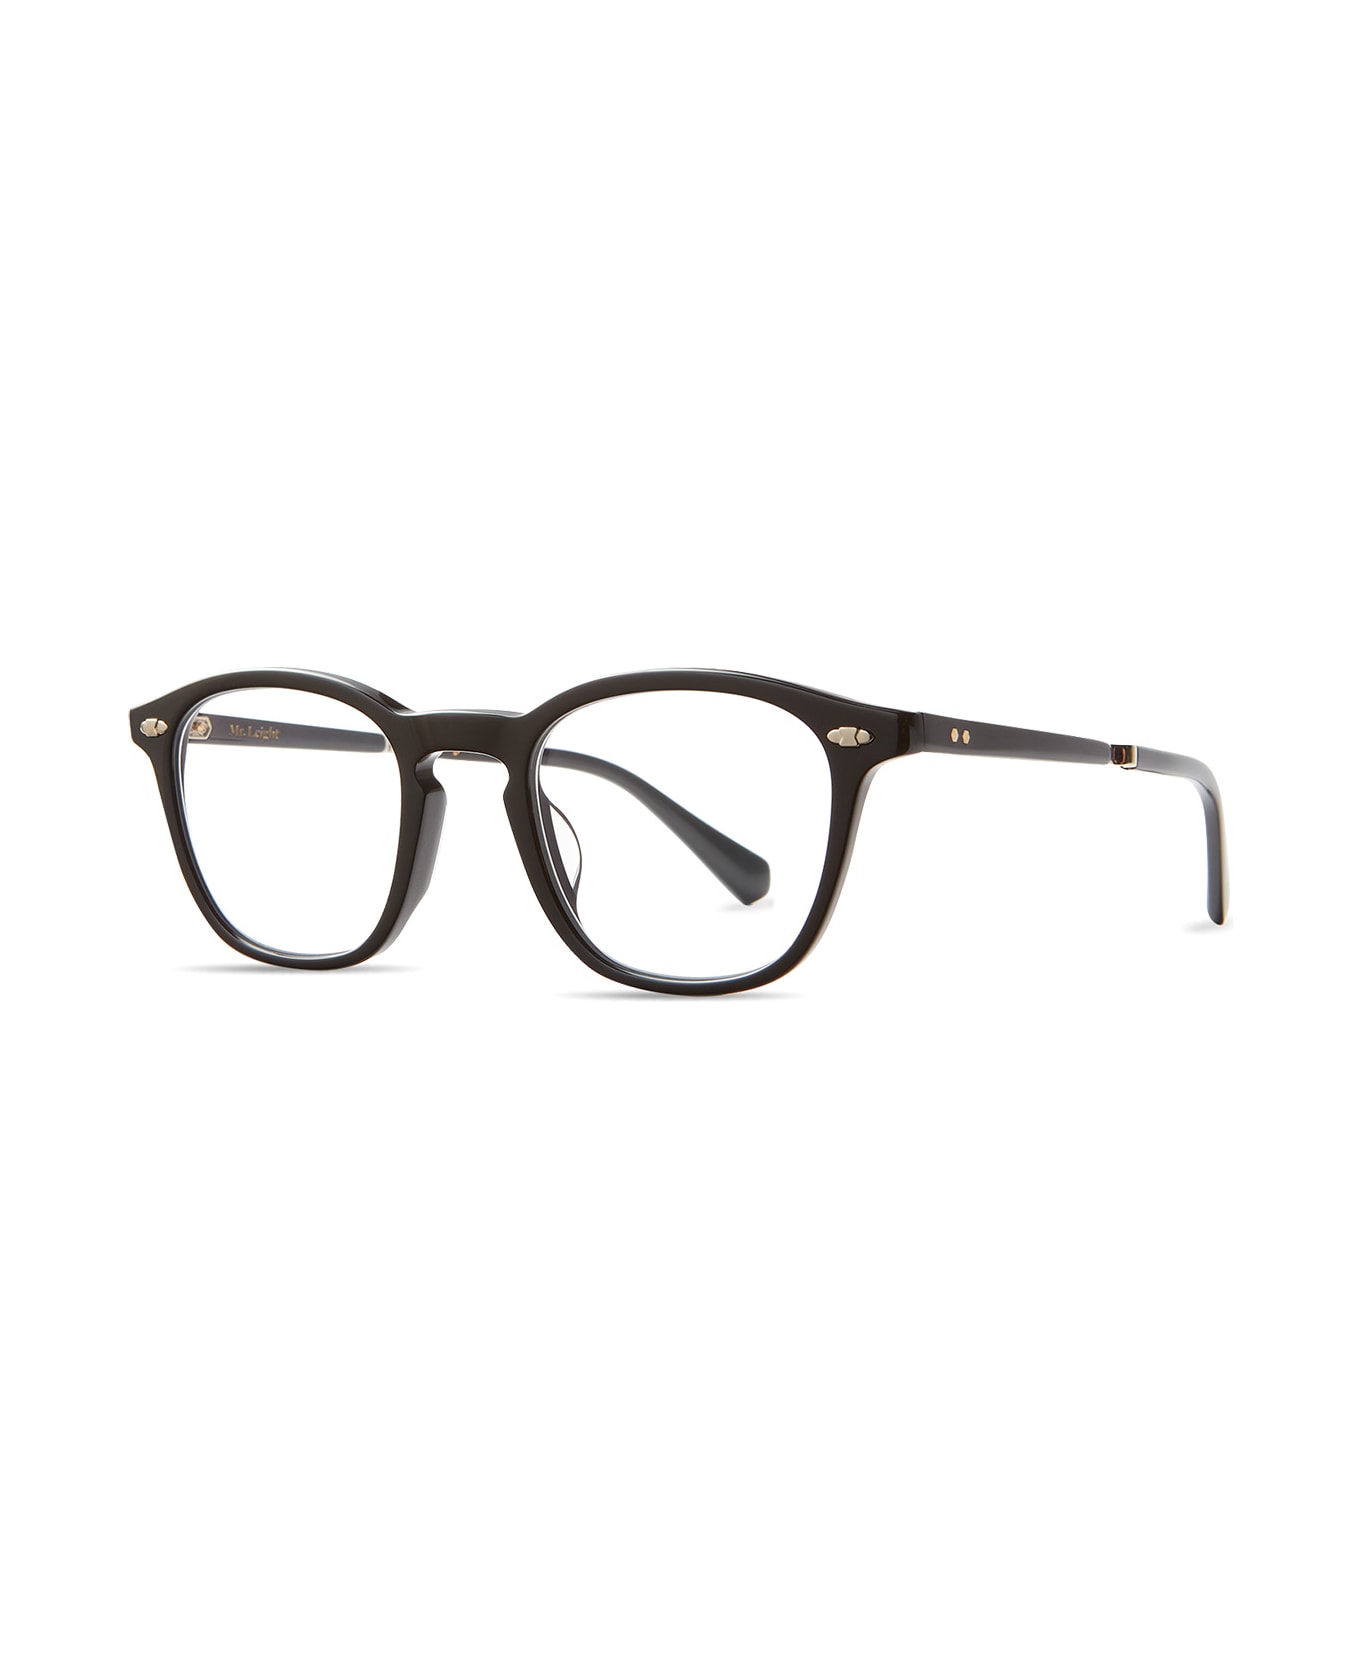 Mr. Leight Devon C Black-gunmetal Glasses - Black-Gunmetal アイウェア